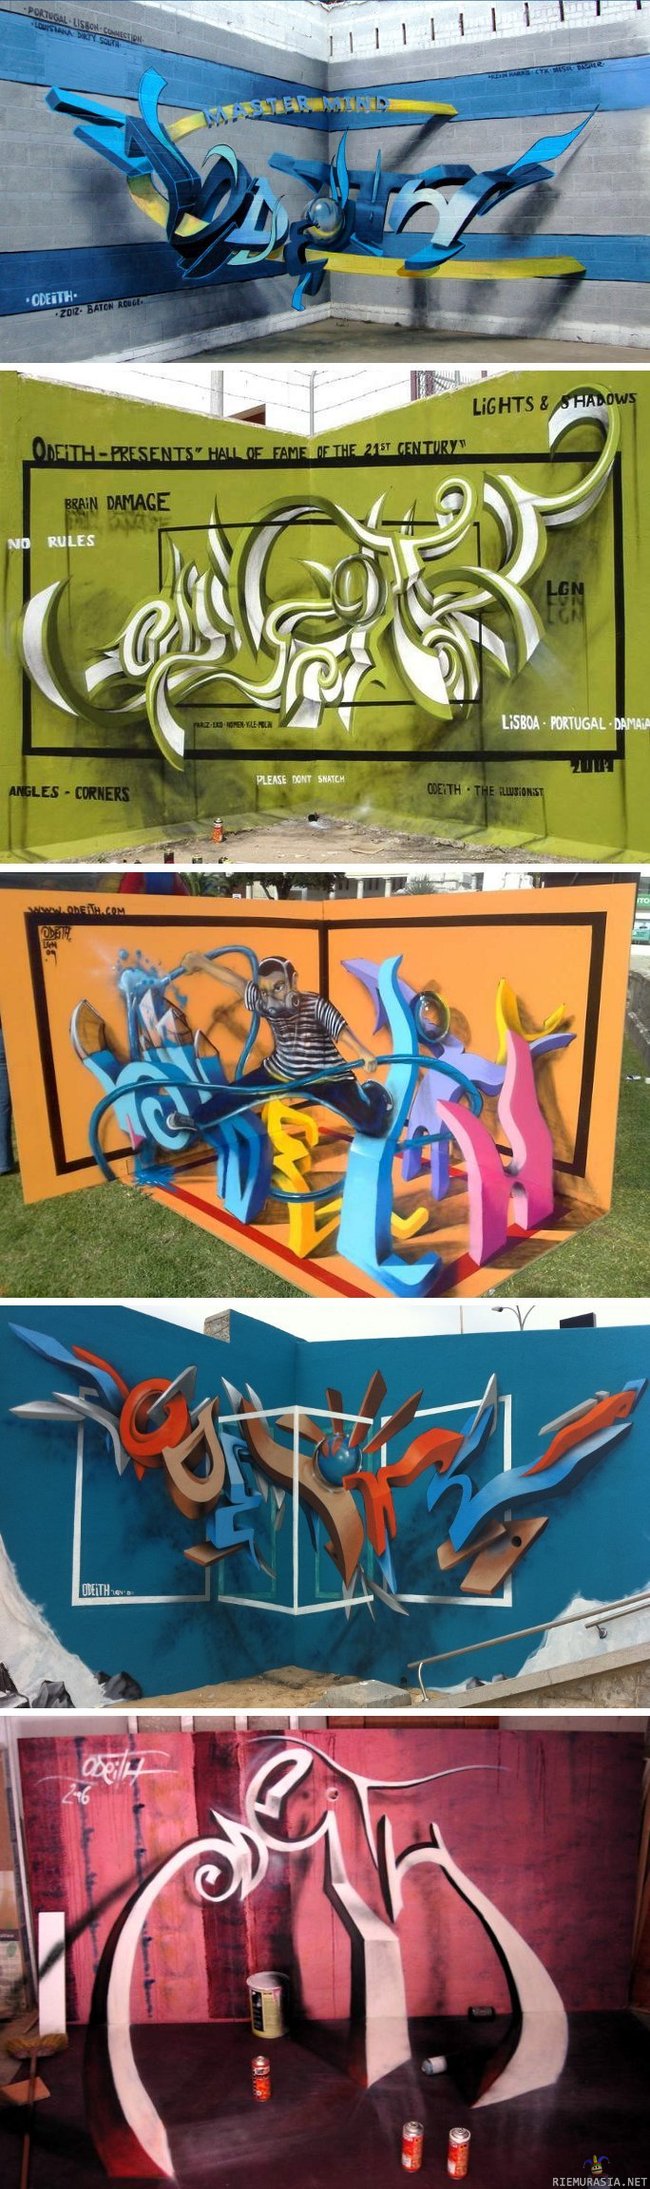 Graffiti - Perus vandaaliporukan alikulkukäytävälle piirtämiä töherryksiä